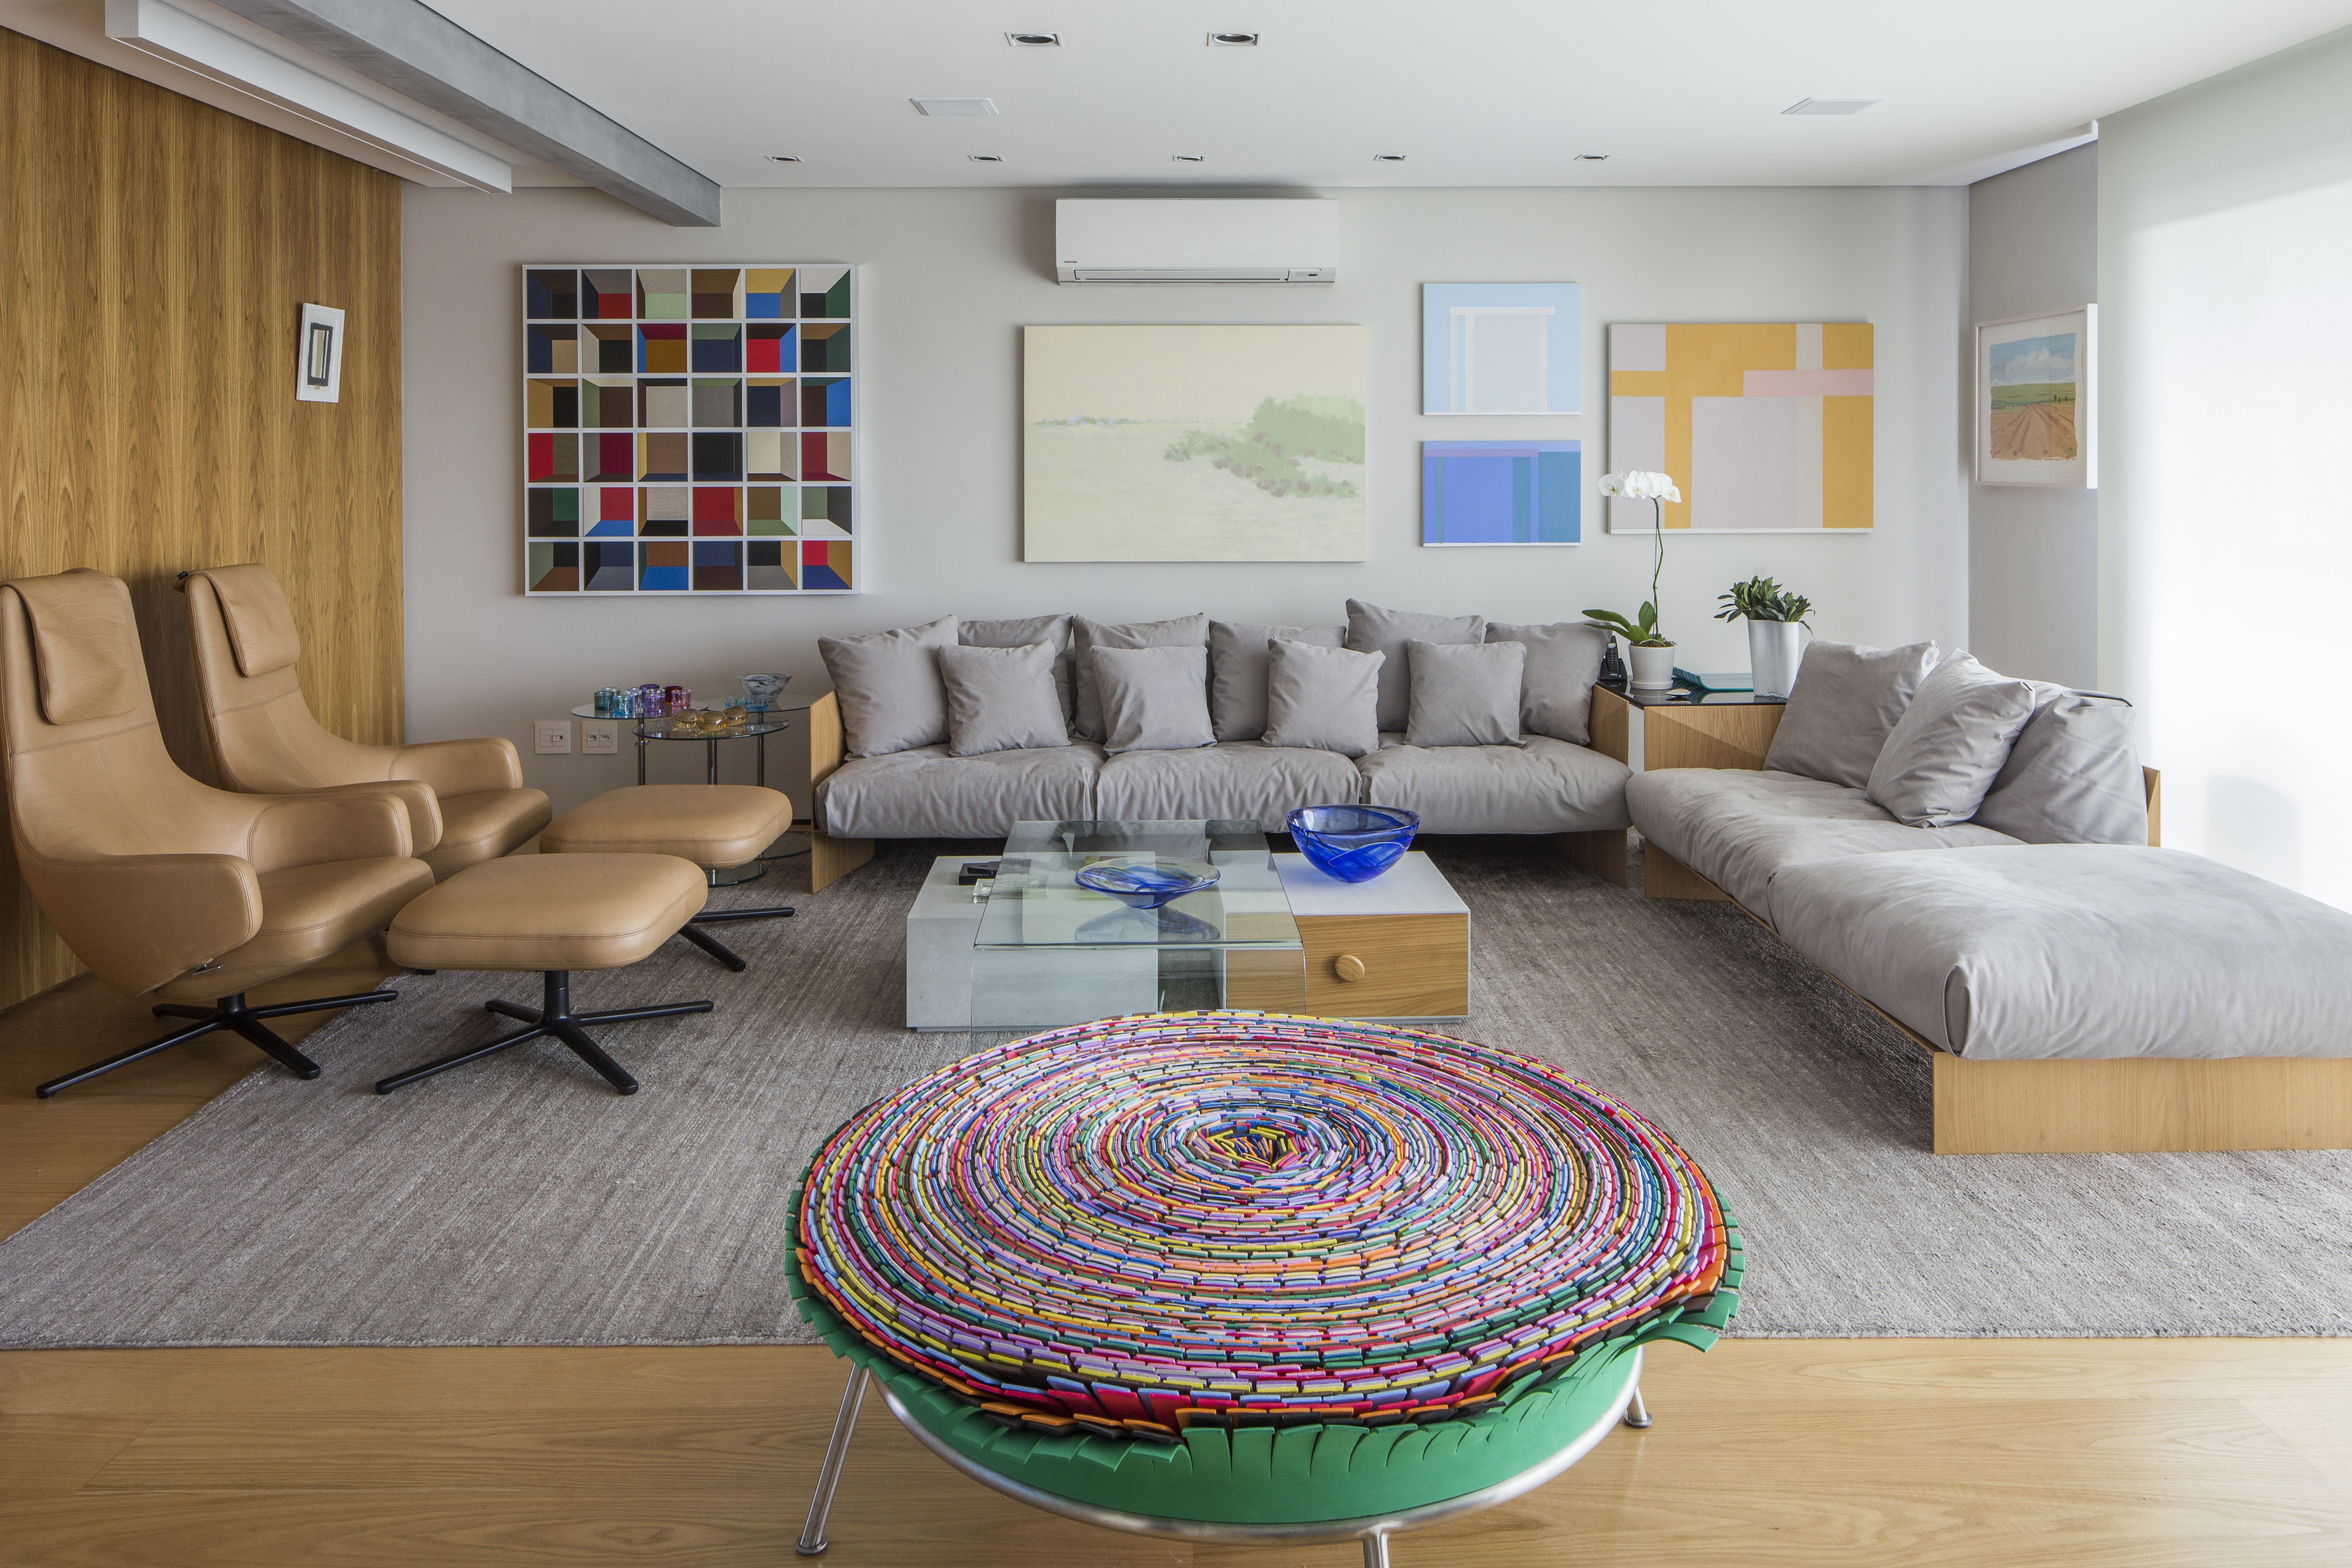 Cobertura triplex de 400 m² tem obras de arte e design assinado  (Foto: | FOTOS THIAGO TRAVESSO )